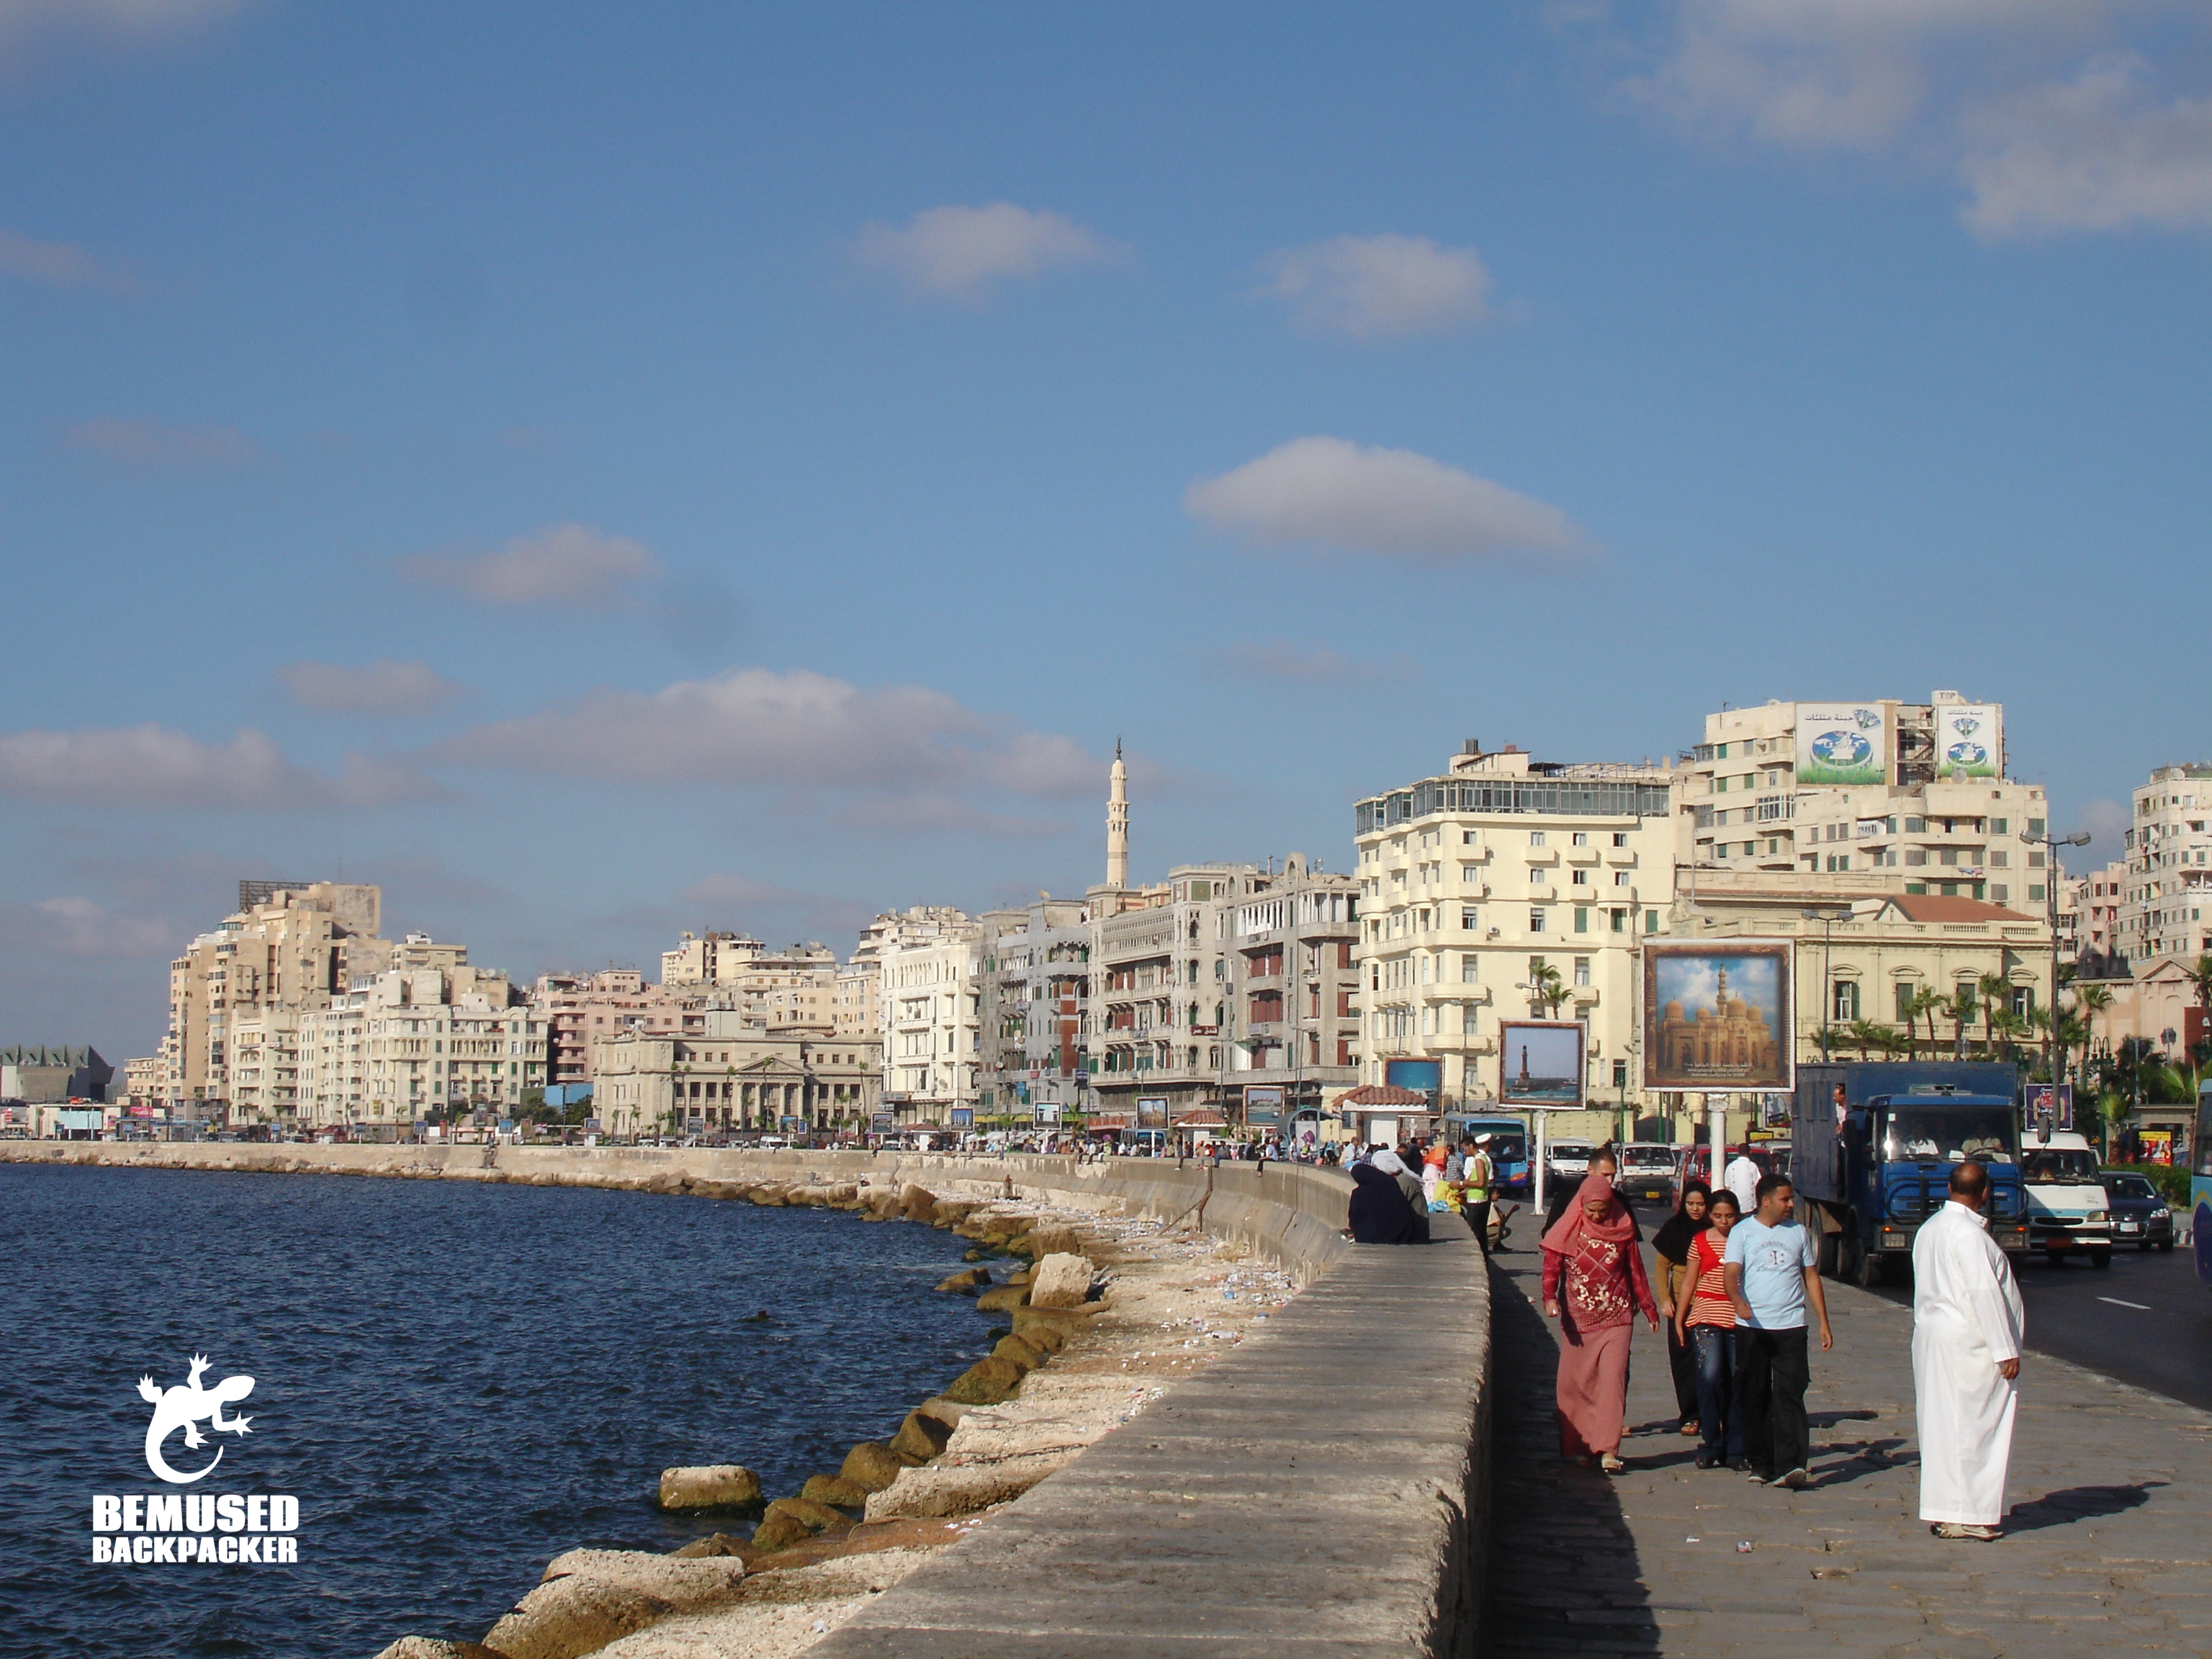 Corniche Alexandria Egypt travel tips